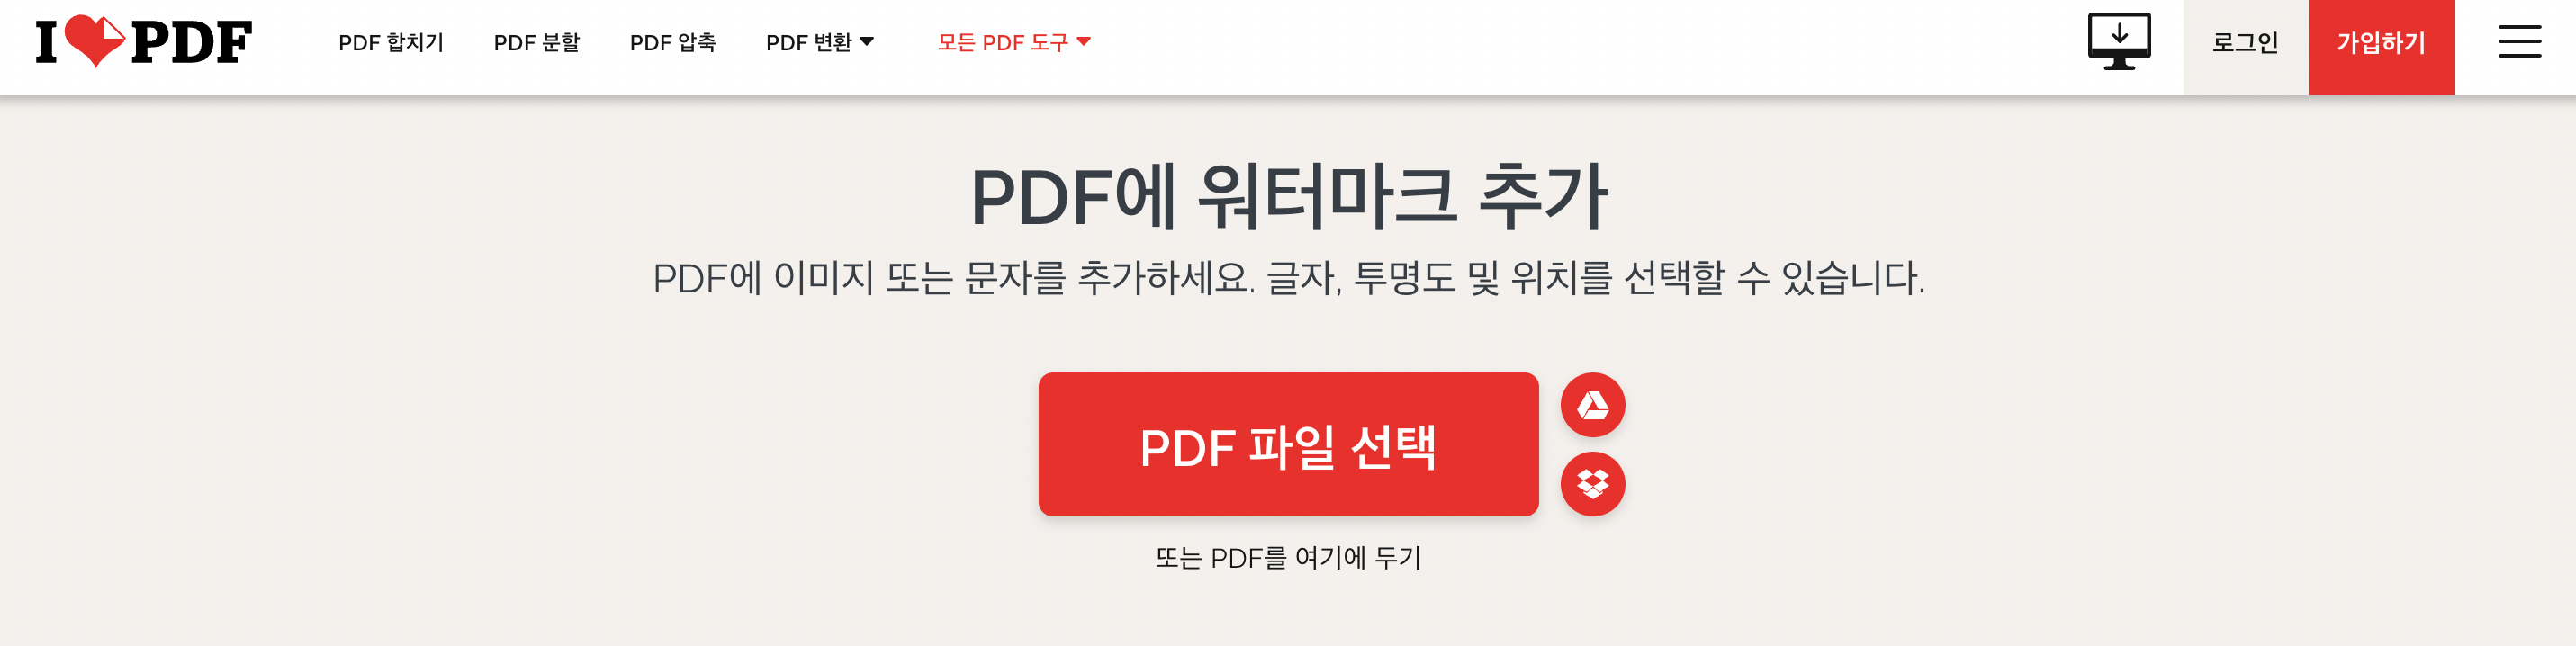 PDF-워터마크-무료-추가-온라인-ilovepdf